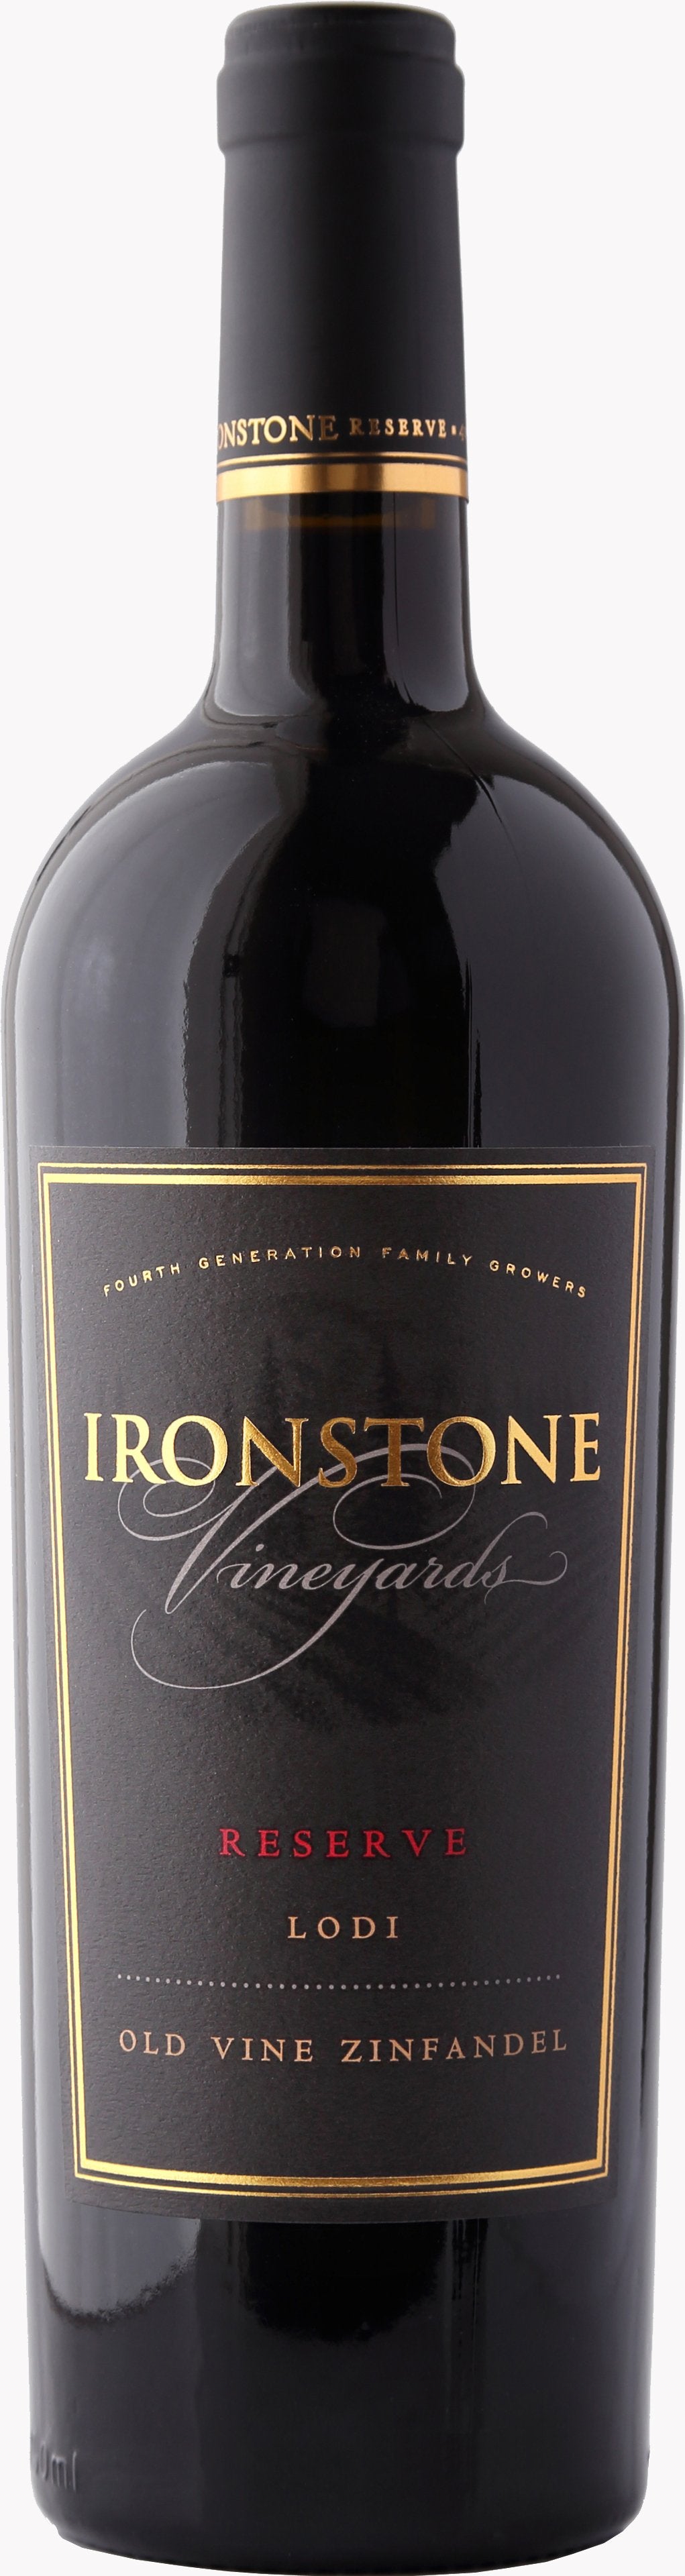 Ironstone Zinfandel Old Vine Reserve 2015